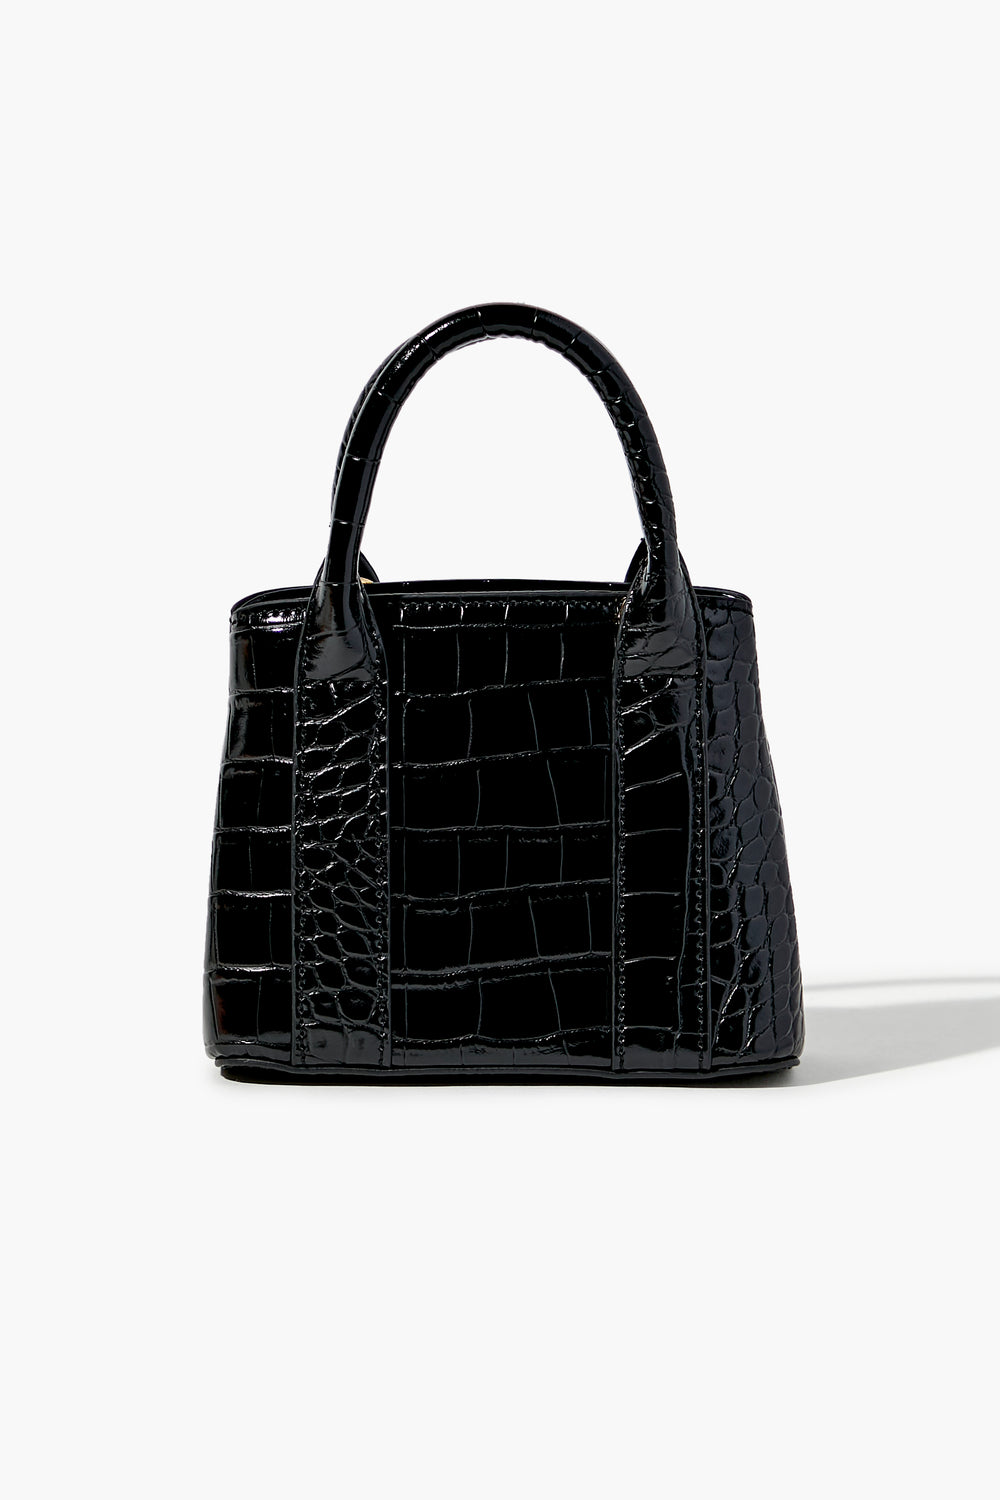 Faux Patent Croc Leather Handbag Black